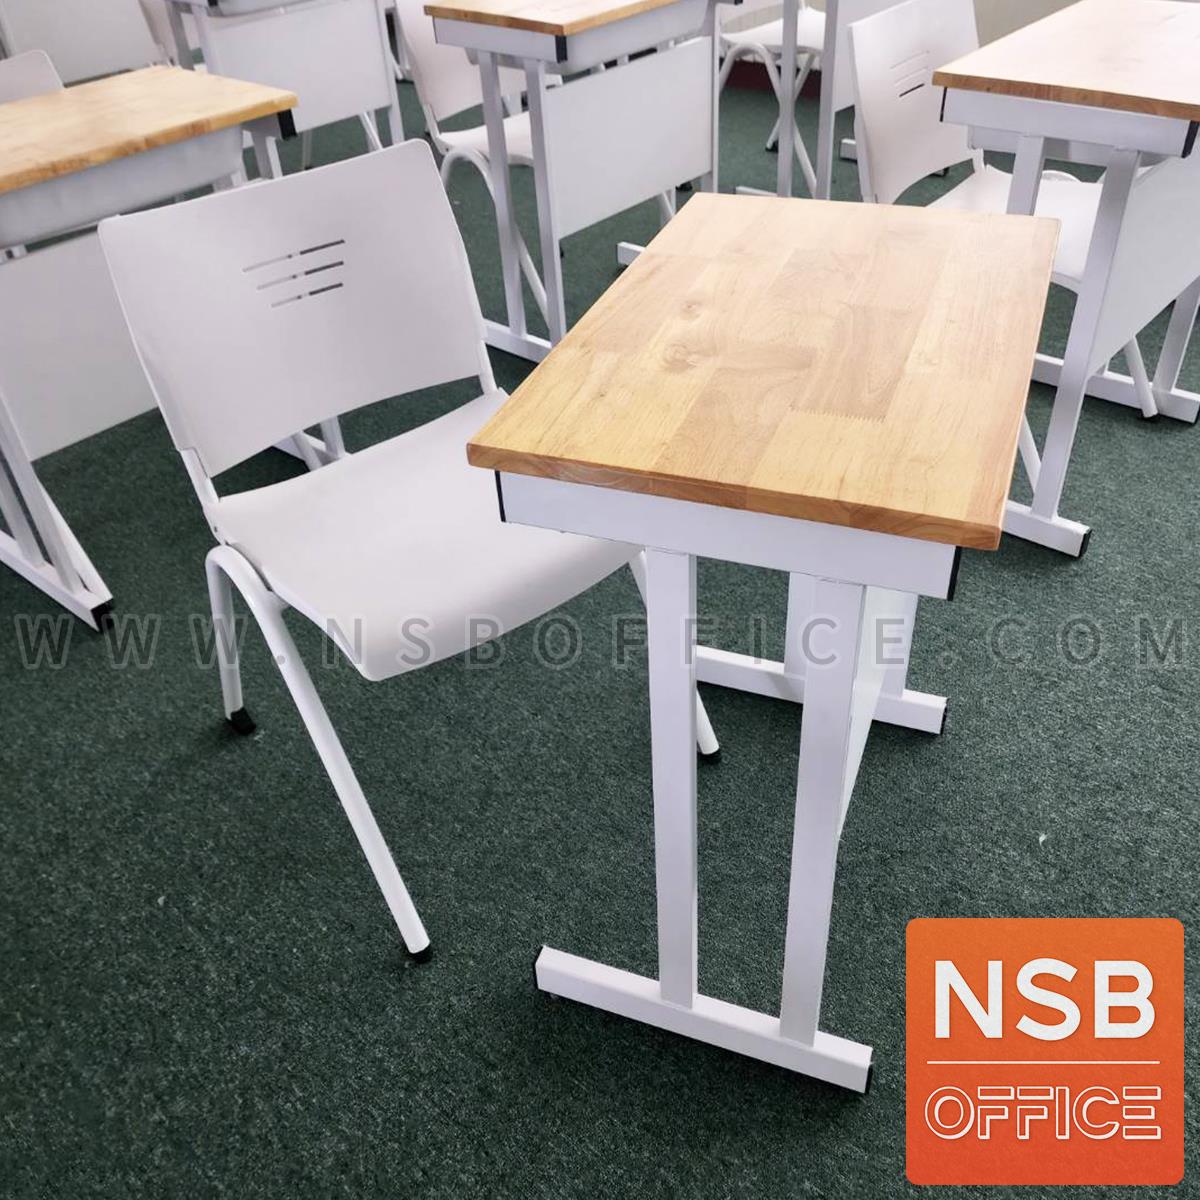 ชุดโต๊ะและเก้าอี้นักเรียน รุ่น Neville (เนวิลล์)  มีช่องเก็บหนังสือ